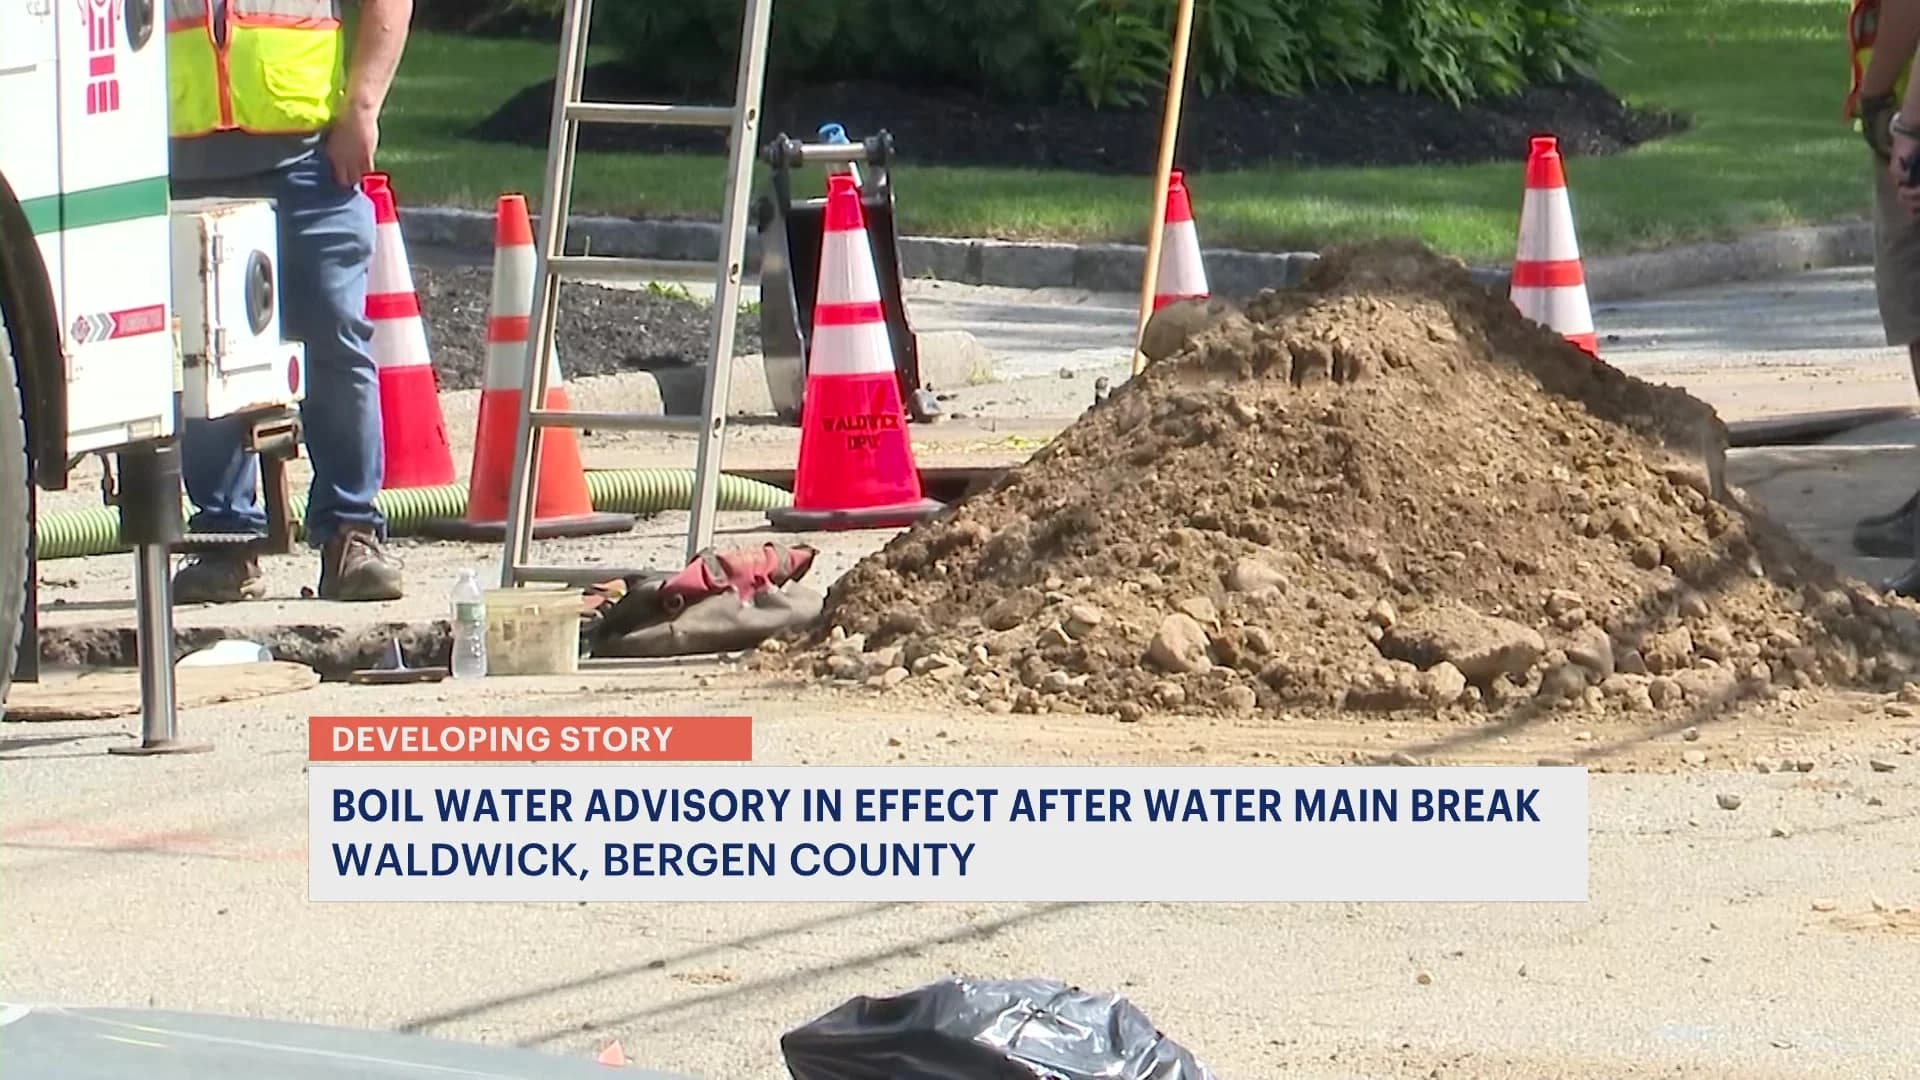 Boil water advisory issued in Waldwick due to major water main break